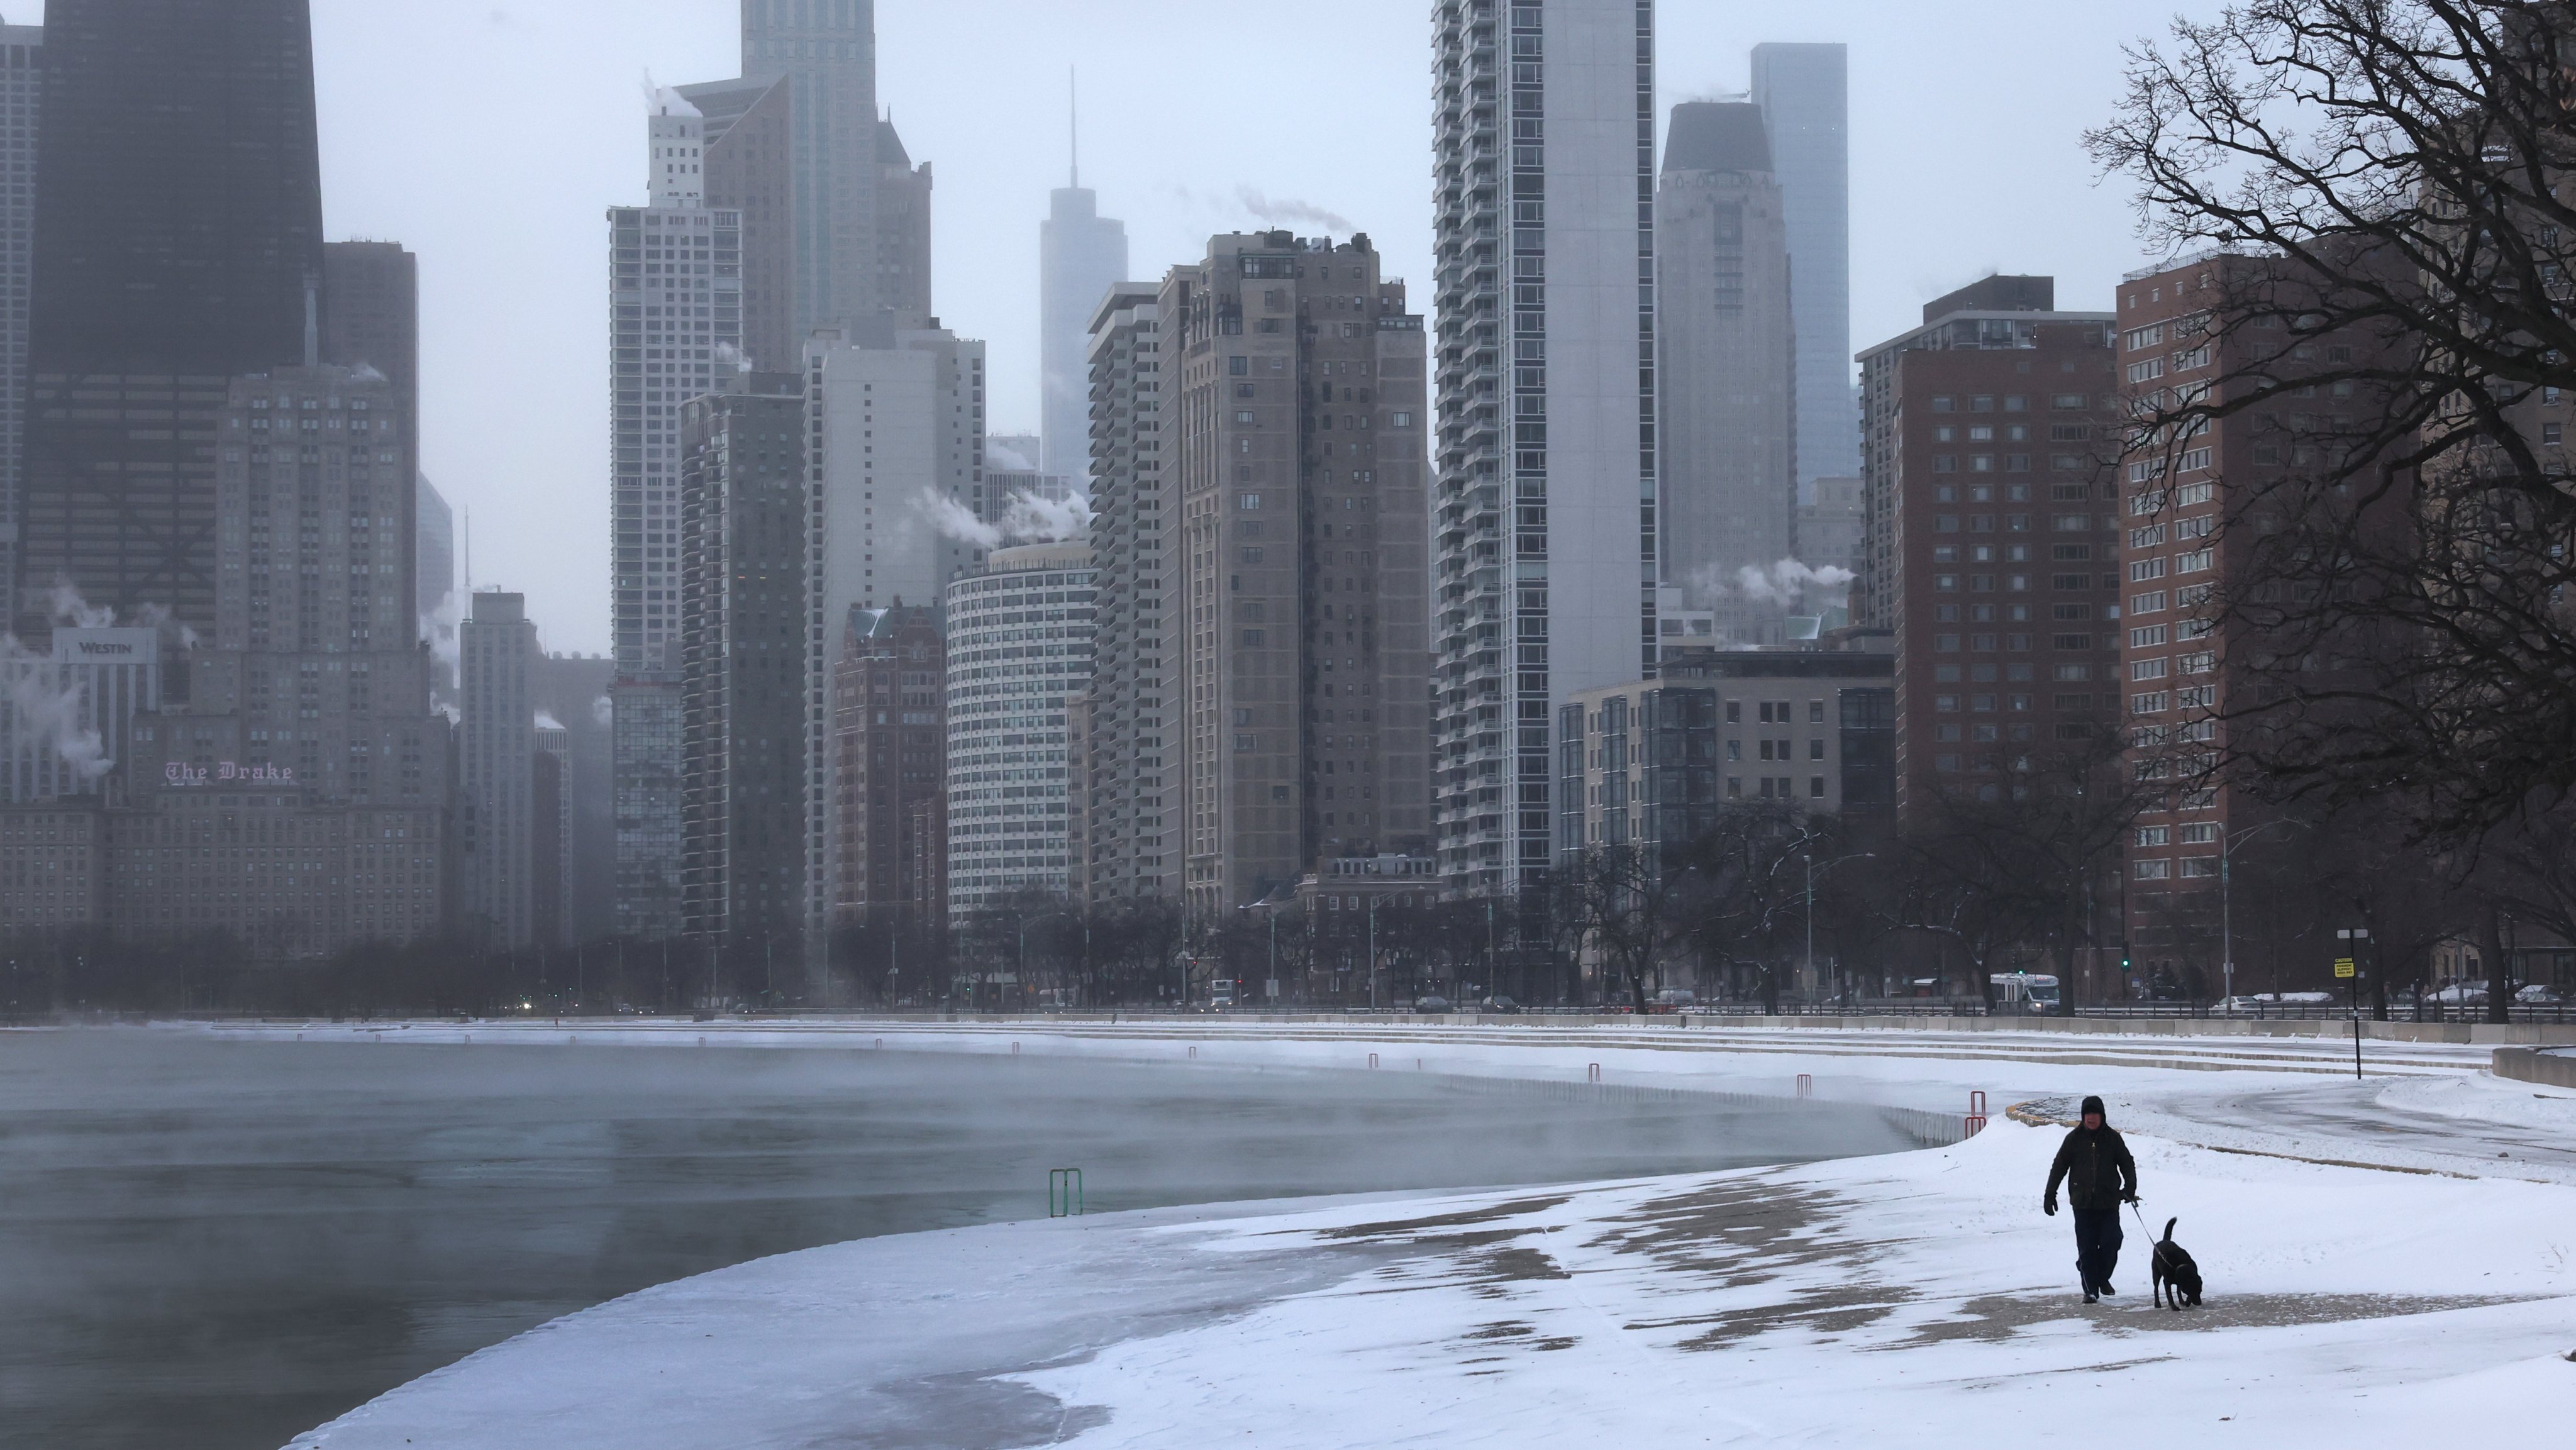 Estados Unidos enfrentam onda de frio extremo com temperaturas negativas;  veja FOTOS, Mundo